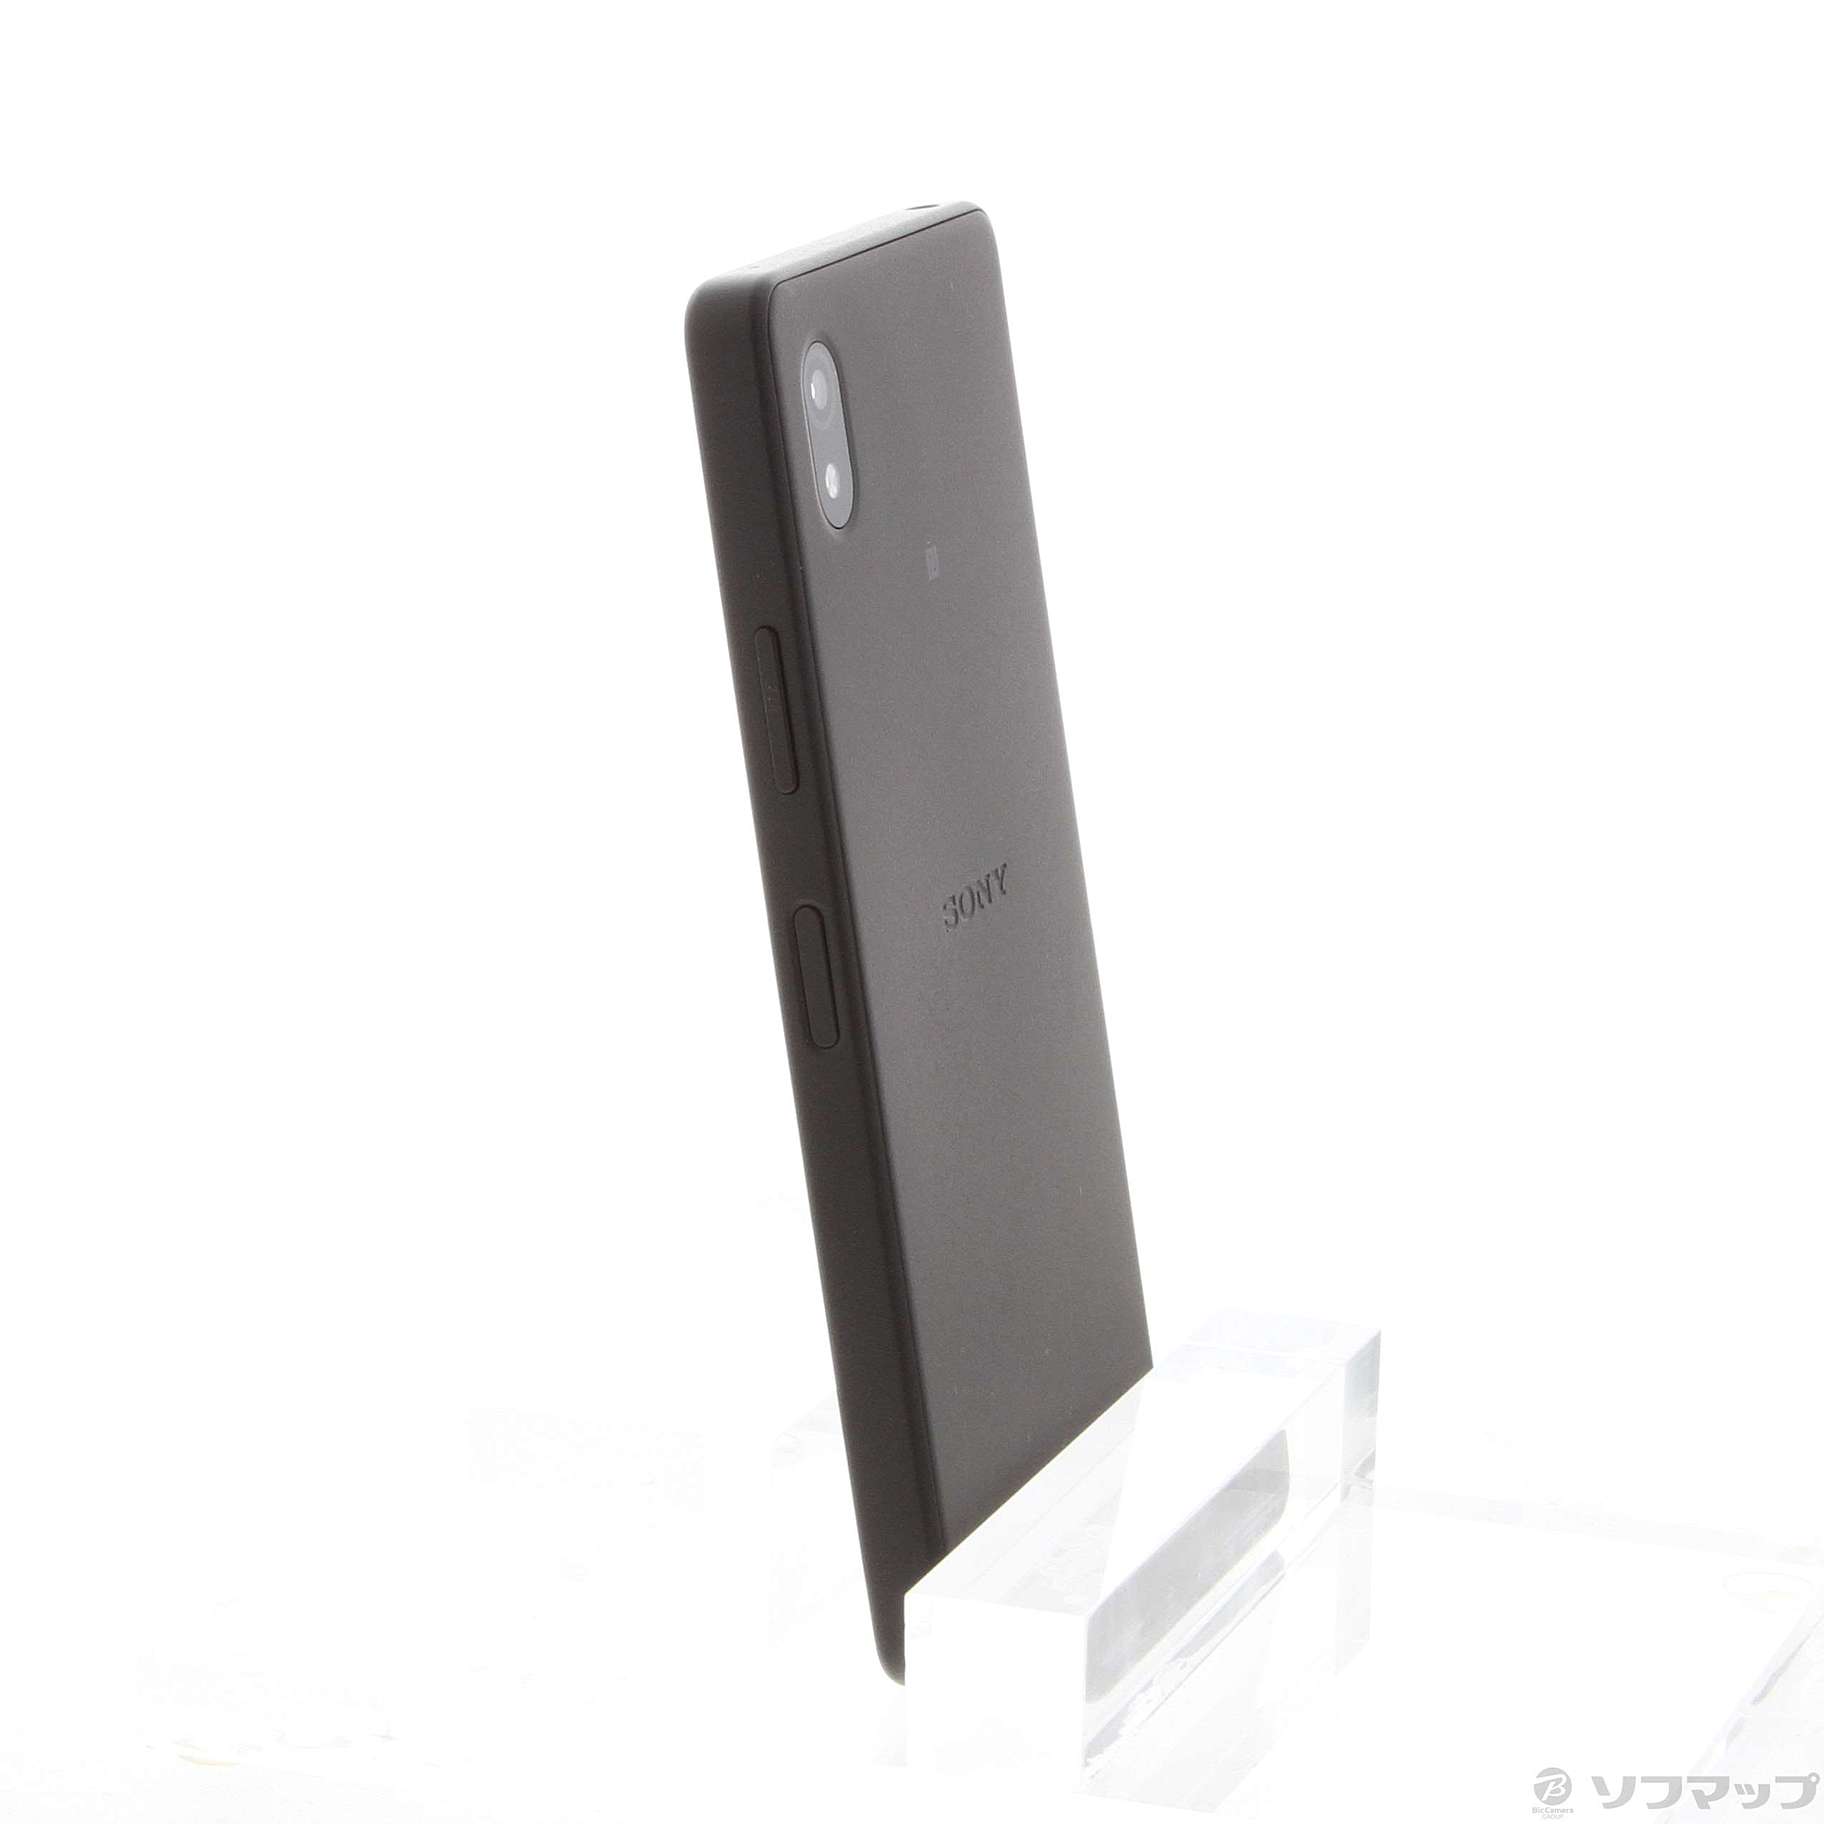 中古】Xperia Ace III 64GB ブラック Y!mobile ◇01/13(金)値下げ